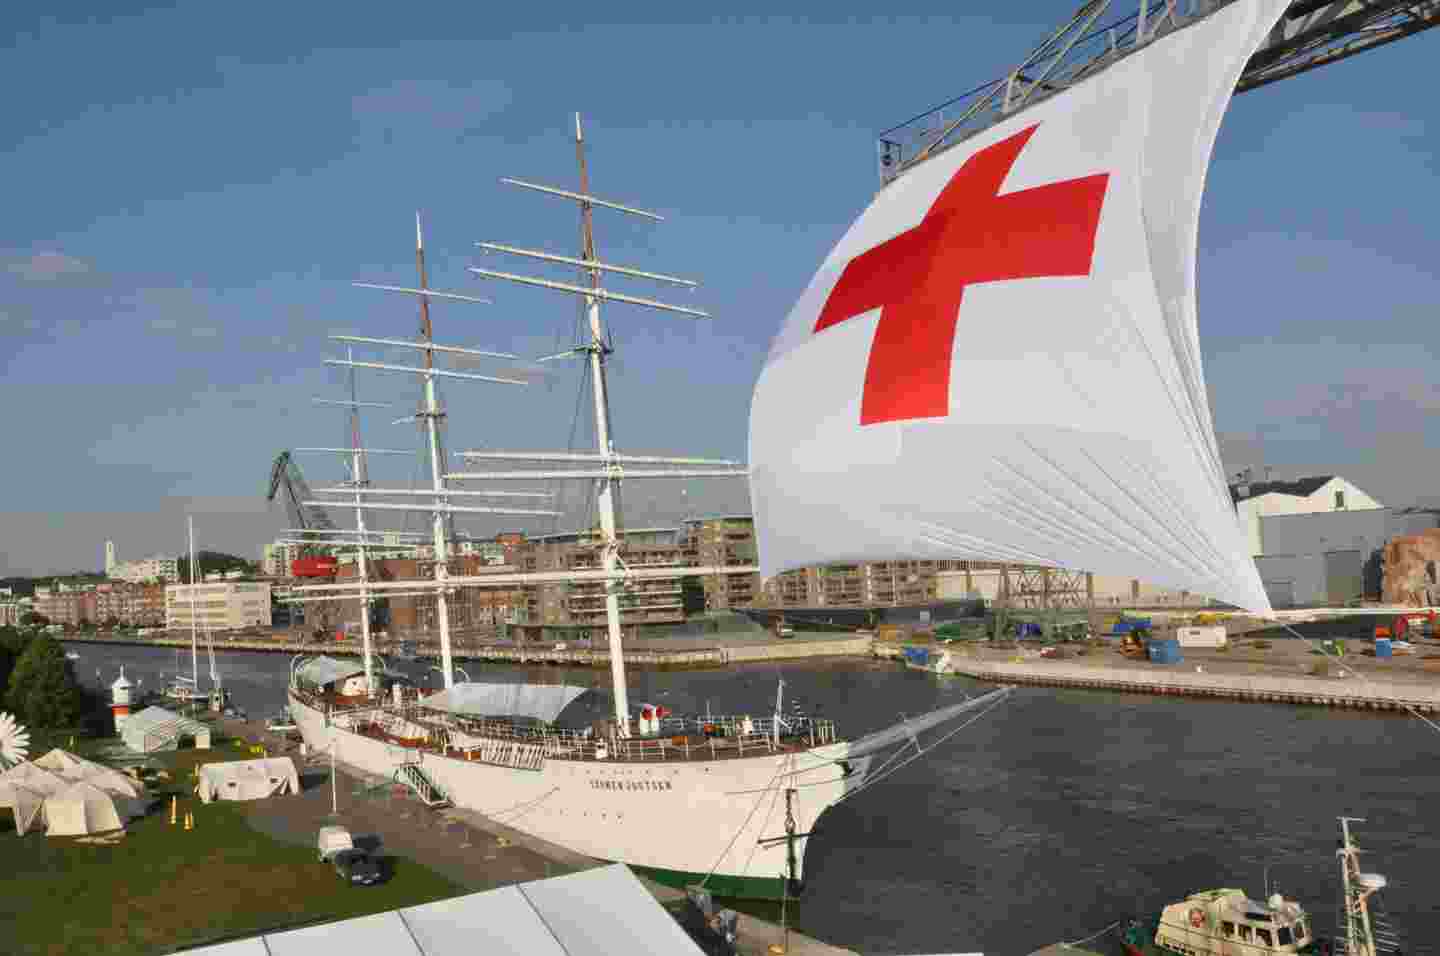 Suomen Joutsen laiva Aurajoessa, jonka edessä jättimäinen lippu, jossa punainen risti.